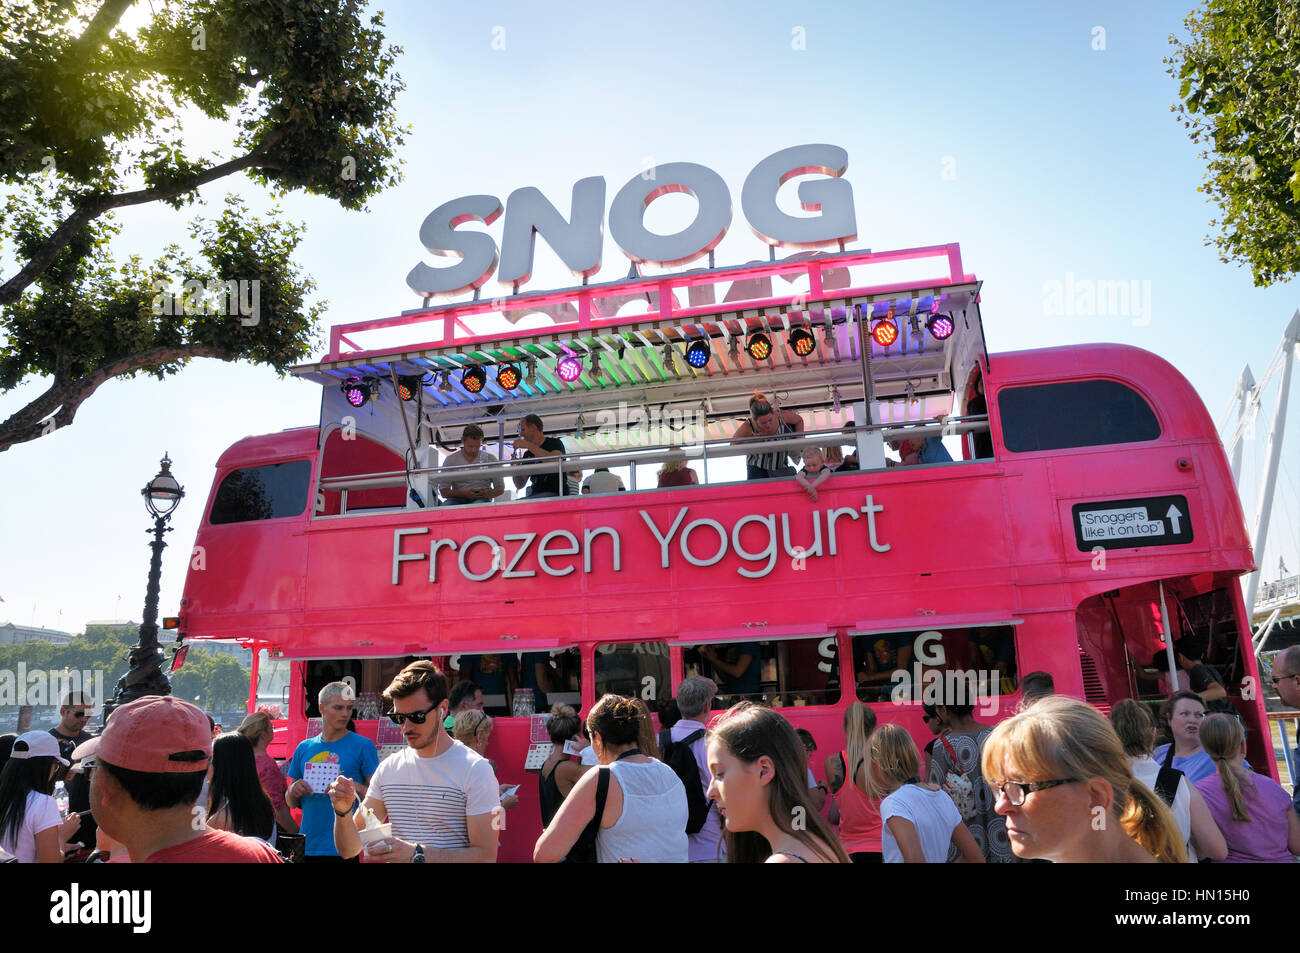 Snog Yogourt glacé bus Routemaster rose dimensions les clients sur une belle journée d'été sur la rive sud de Londres Banque D'Images